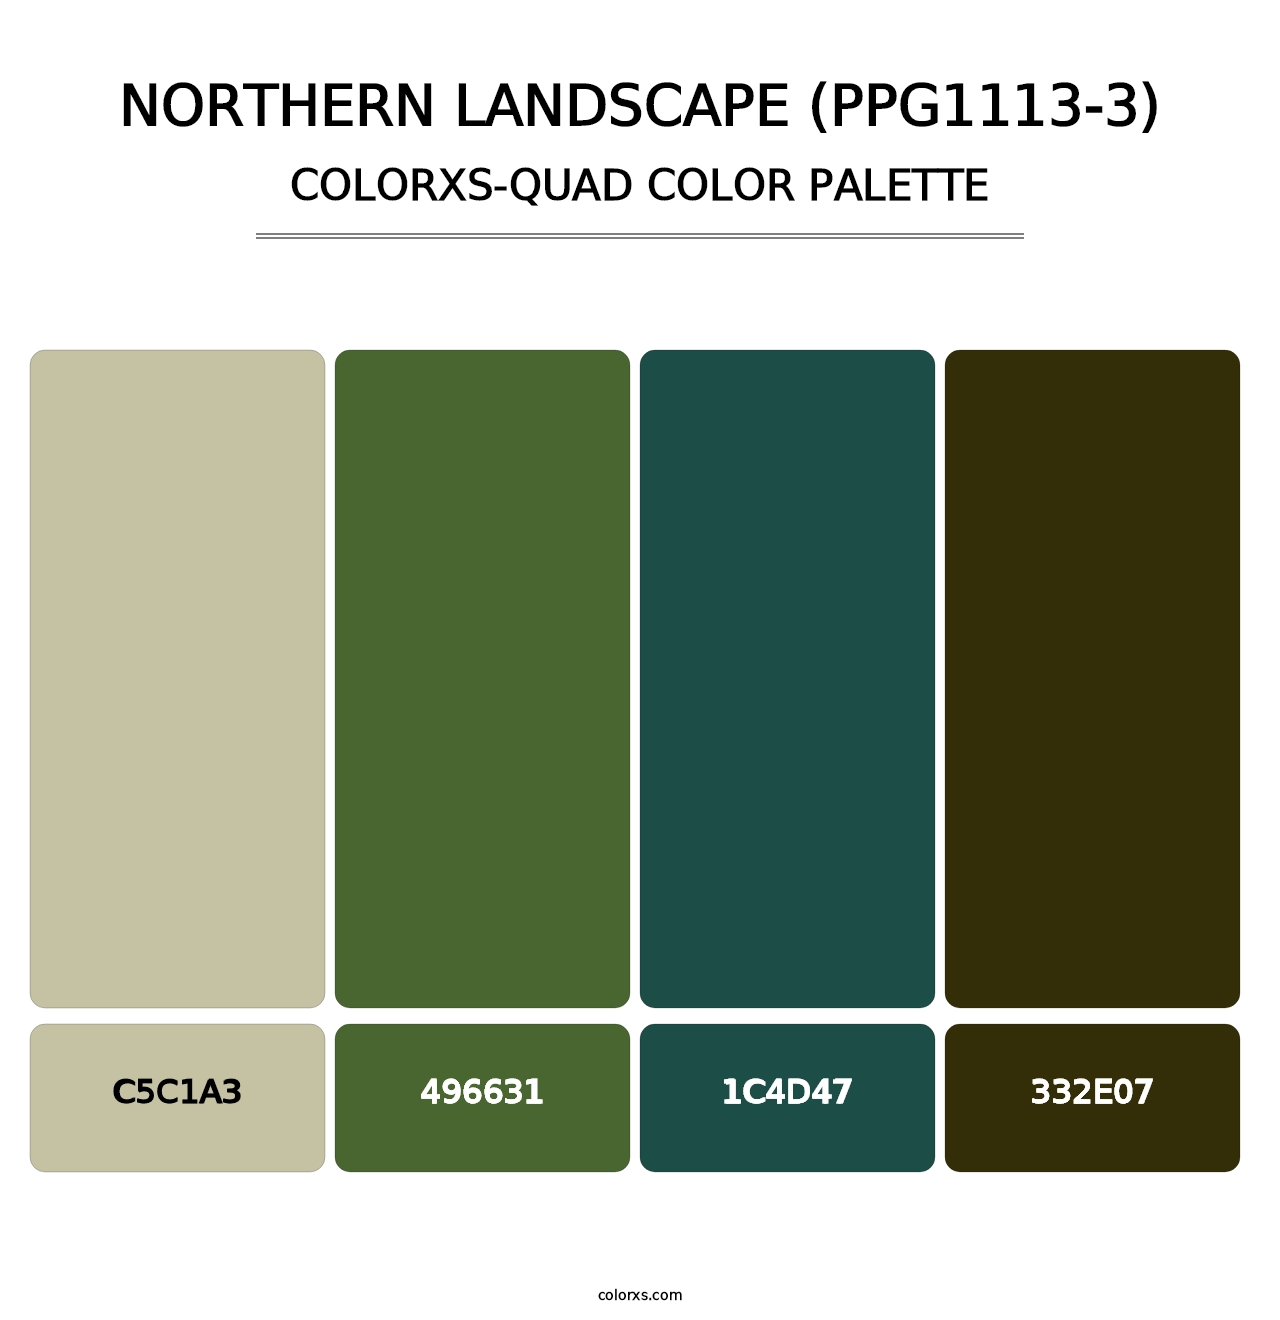 Northern Landscape (PPG1113-3) - Colorxs Quad Palette